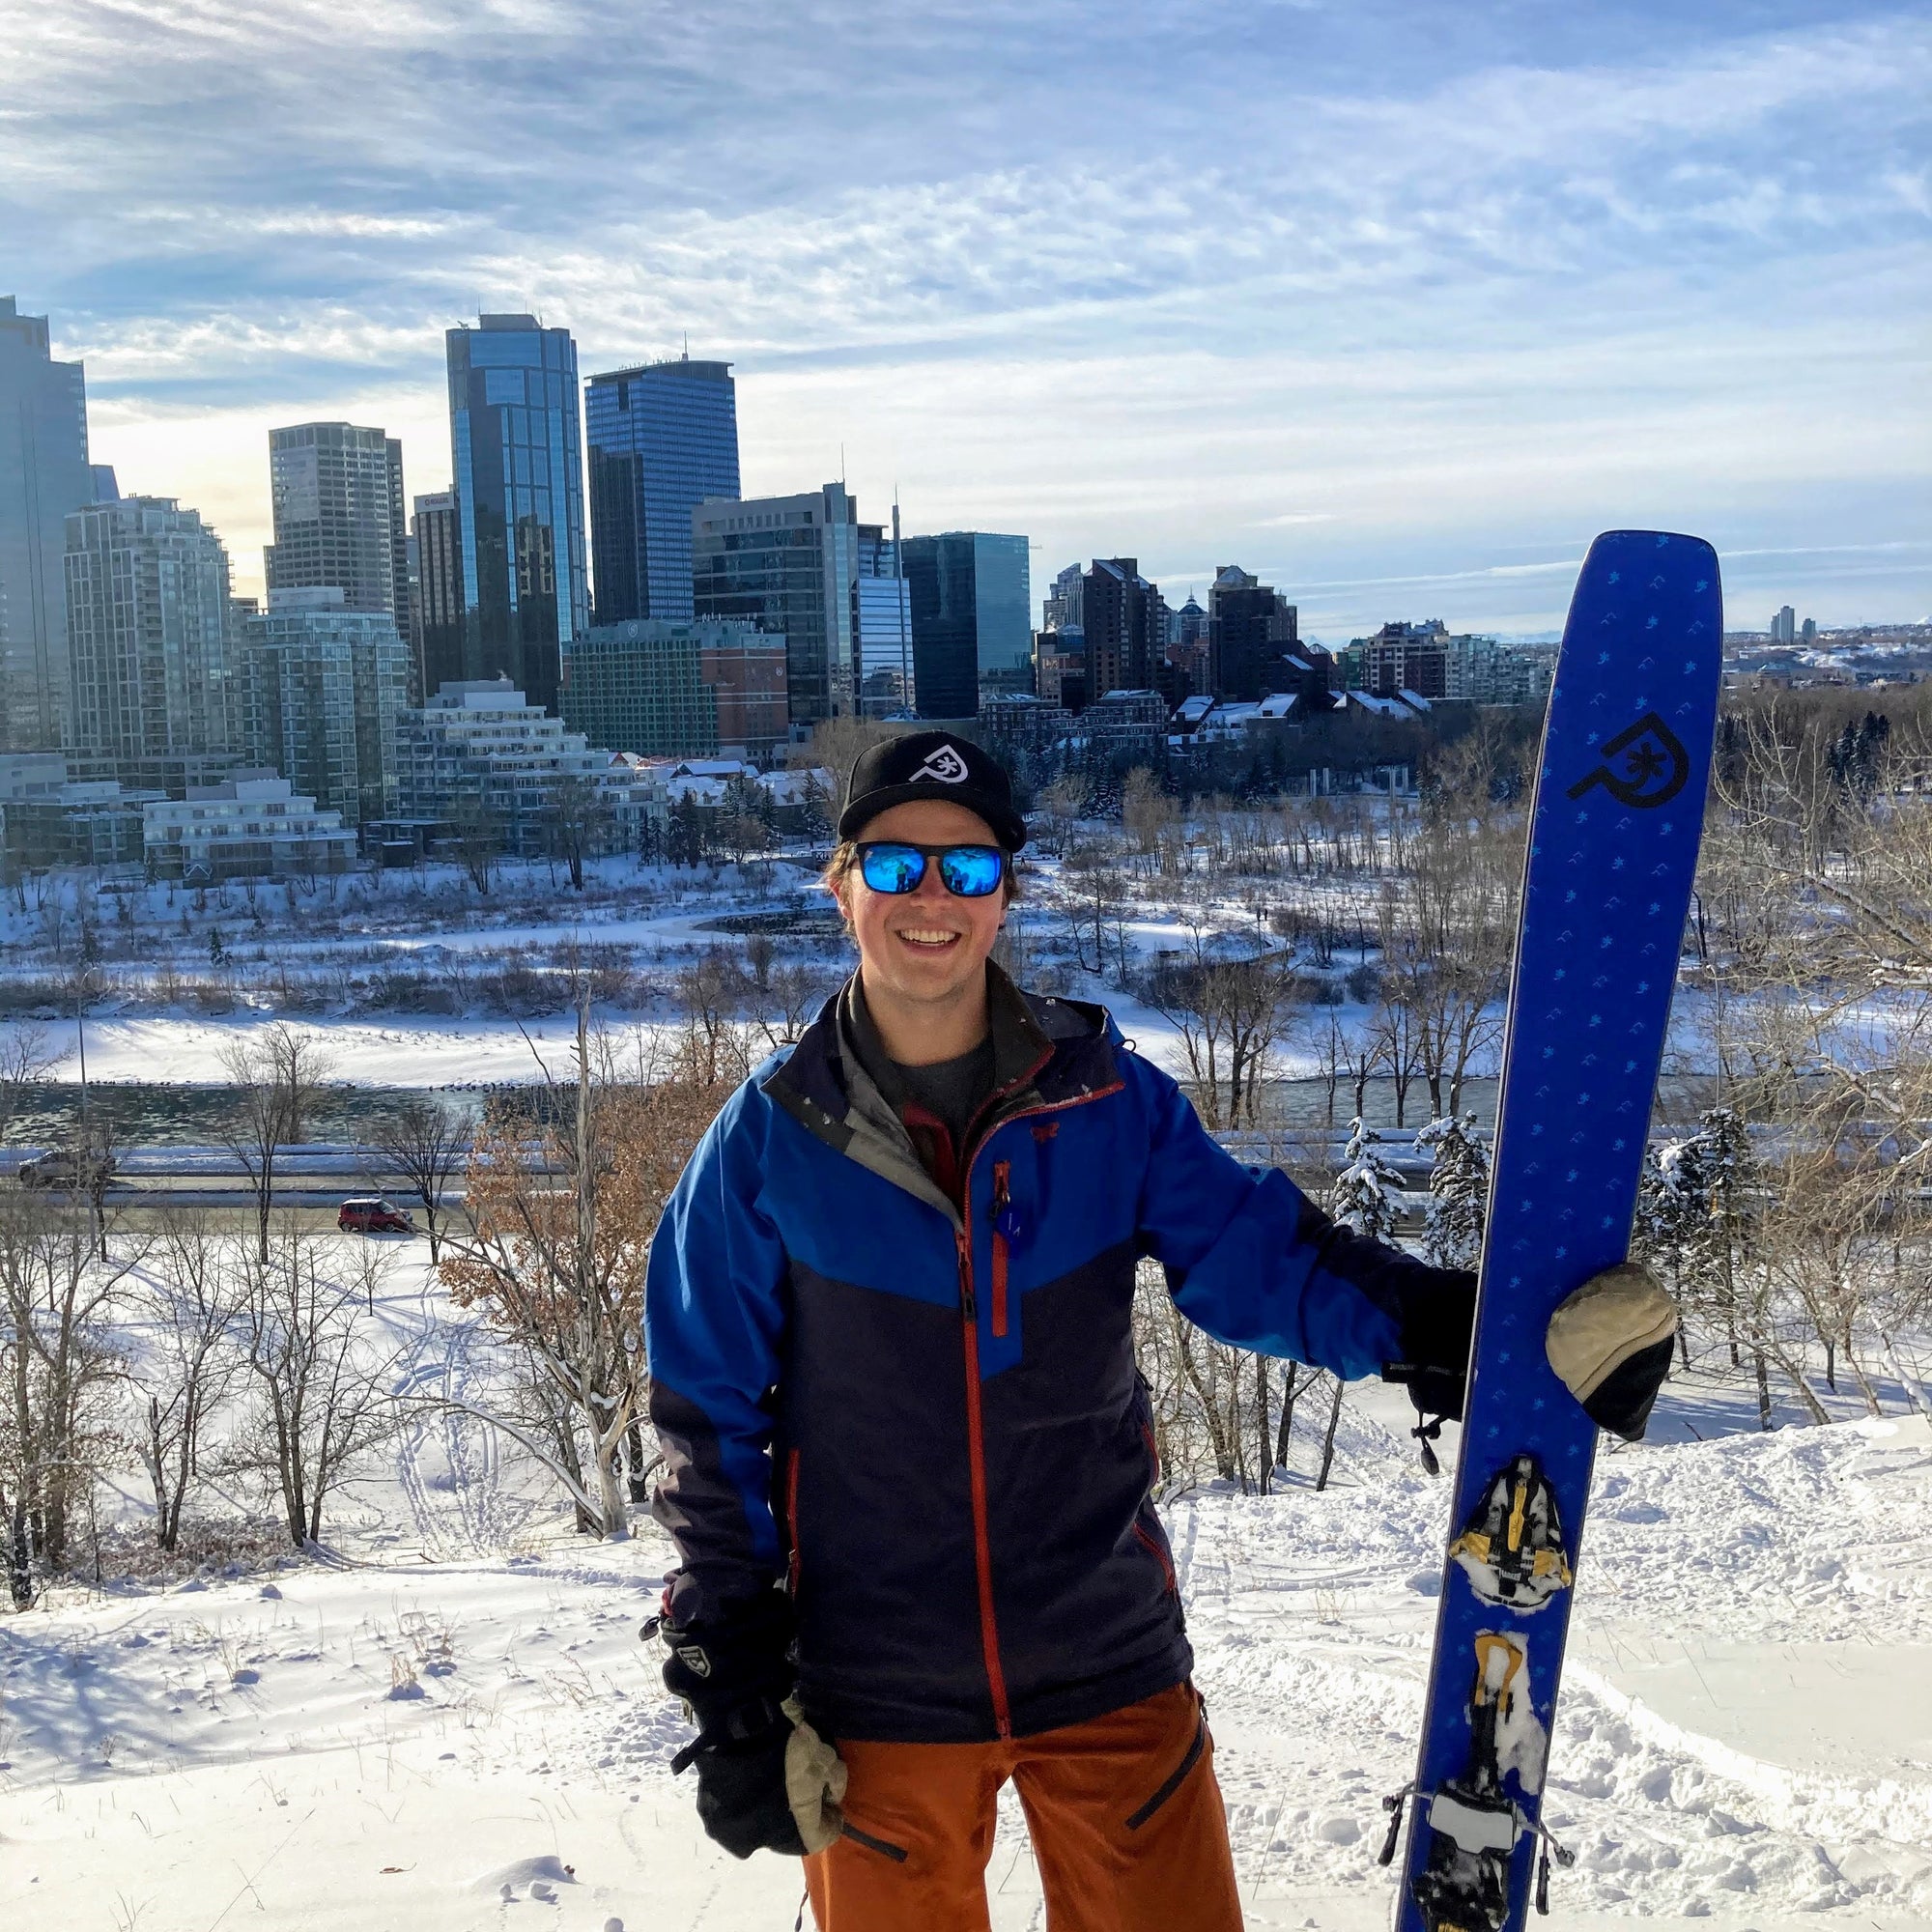 Red Ski vs. Blue Ski